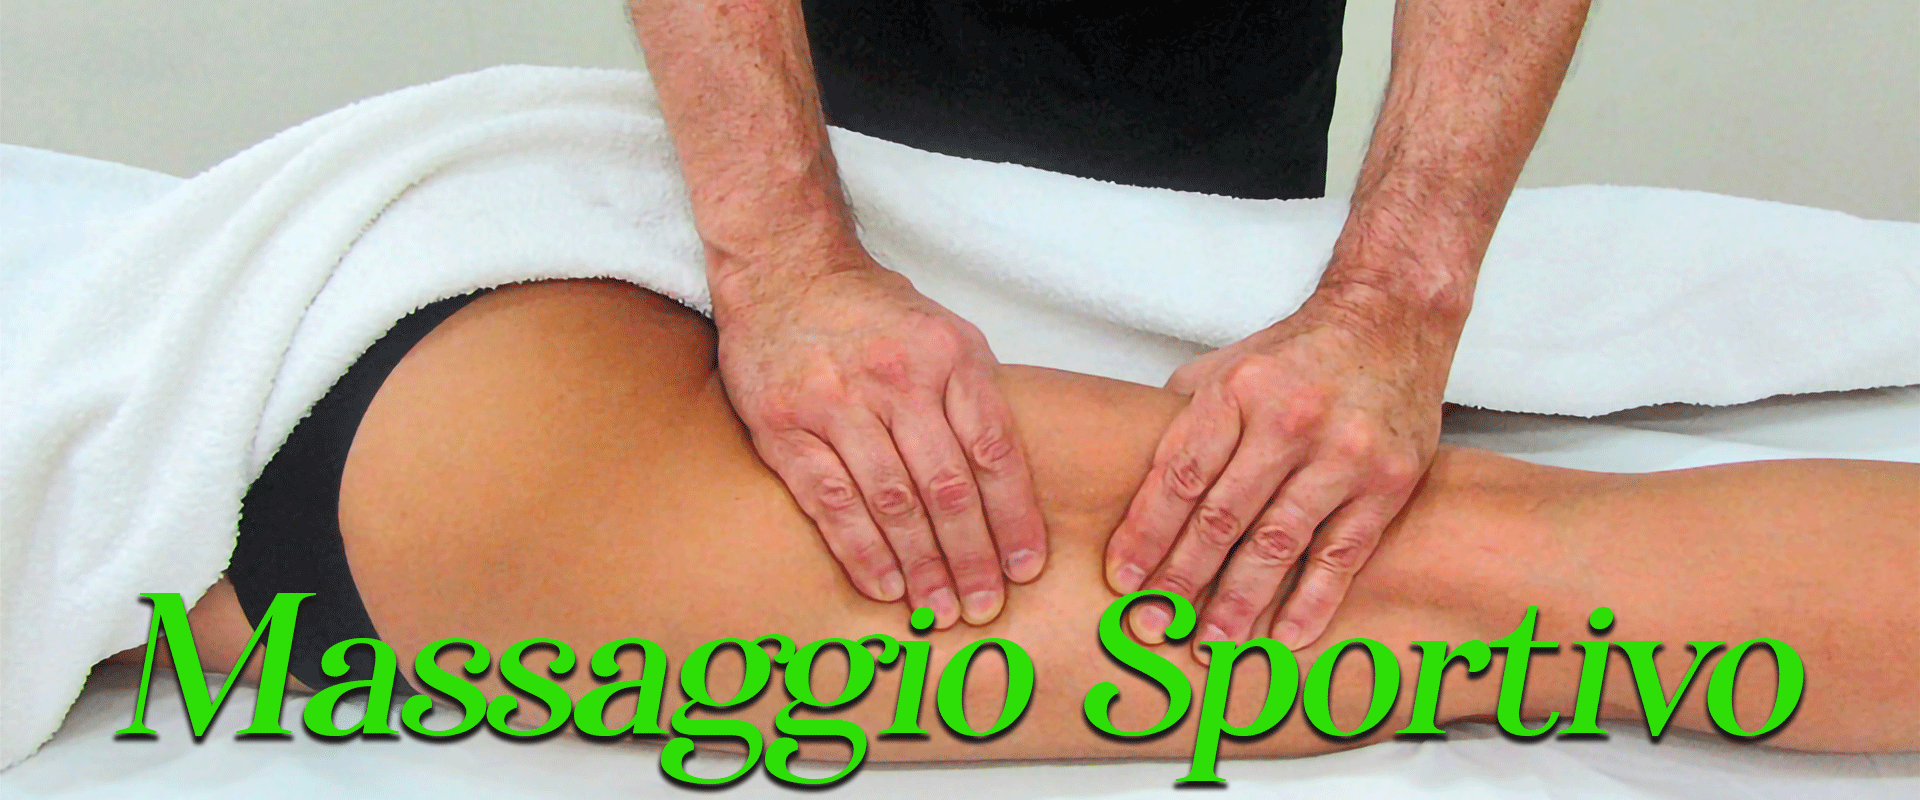 massaggio-sportivo2